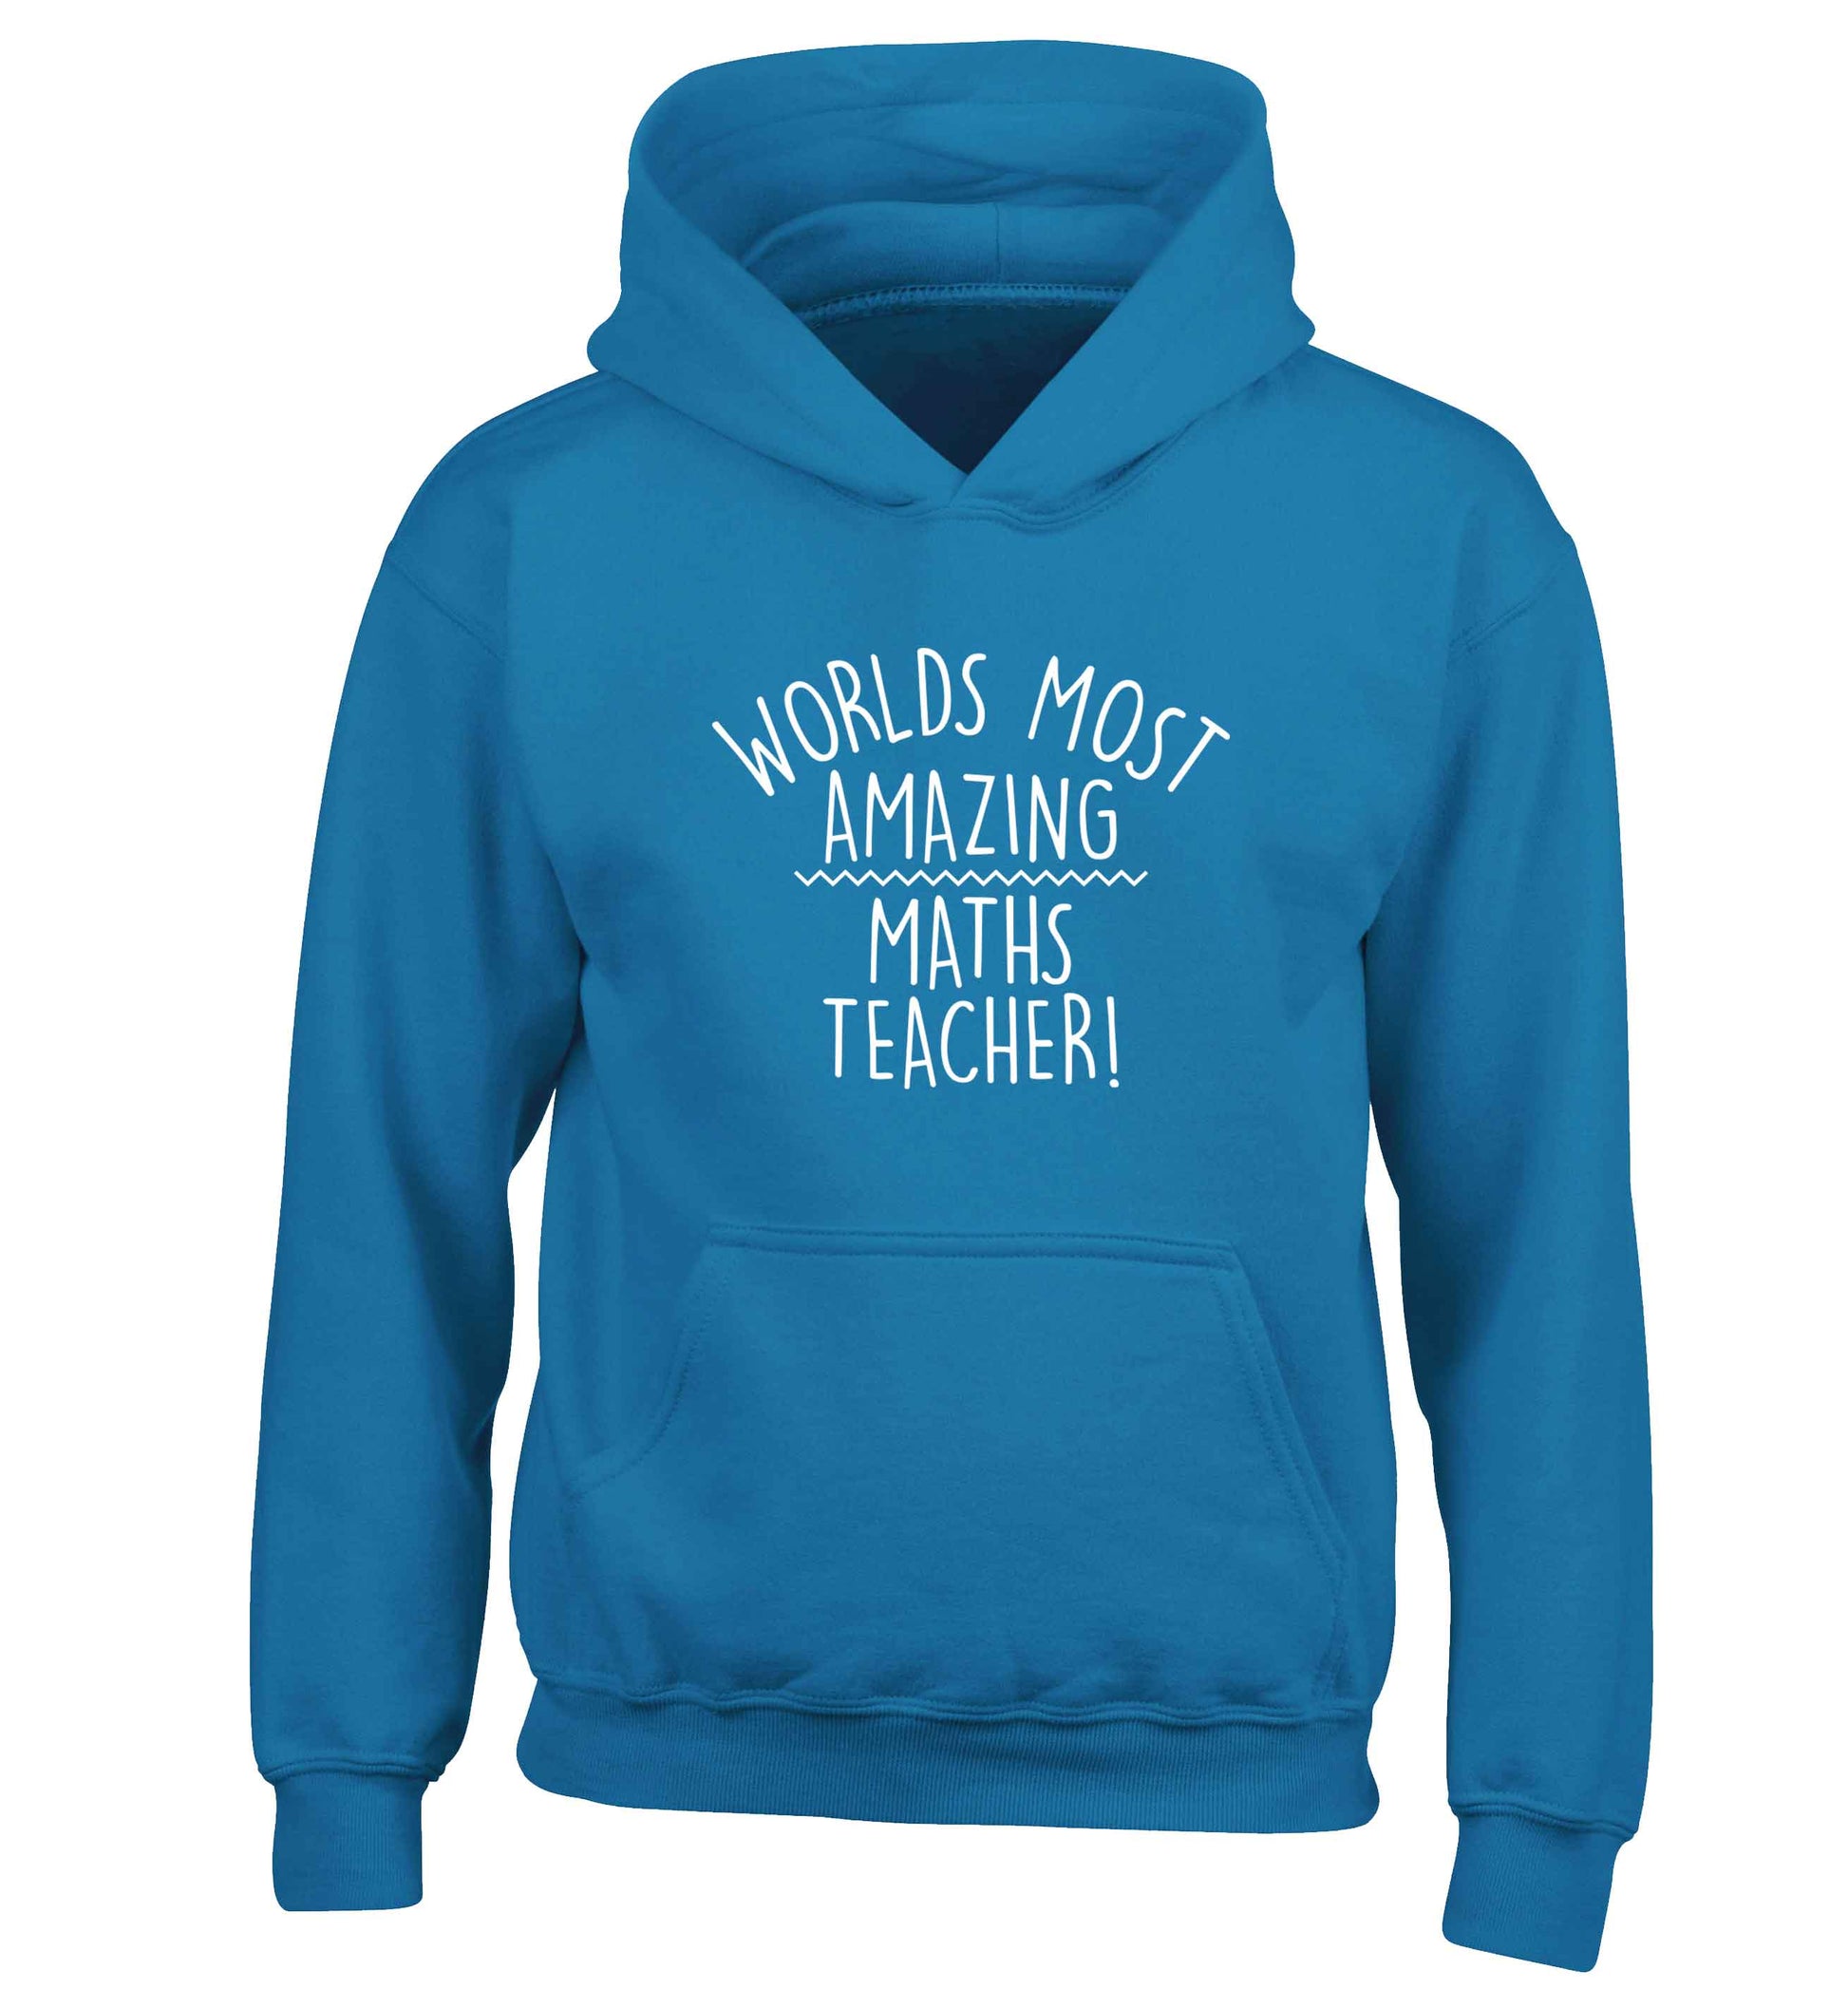 Worlds most amazing maths teacher children's blue hoodie 12-13 Years